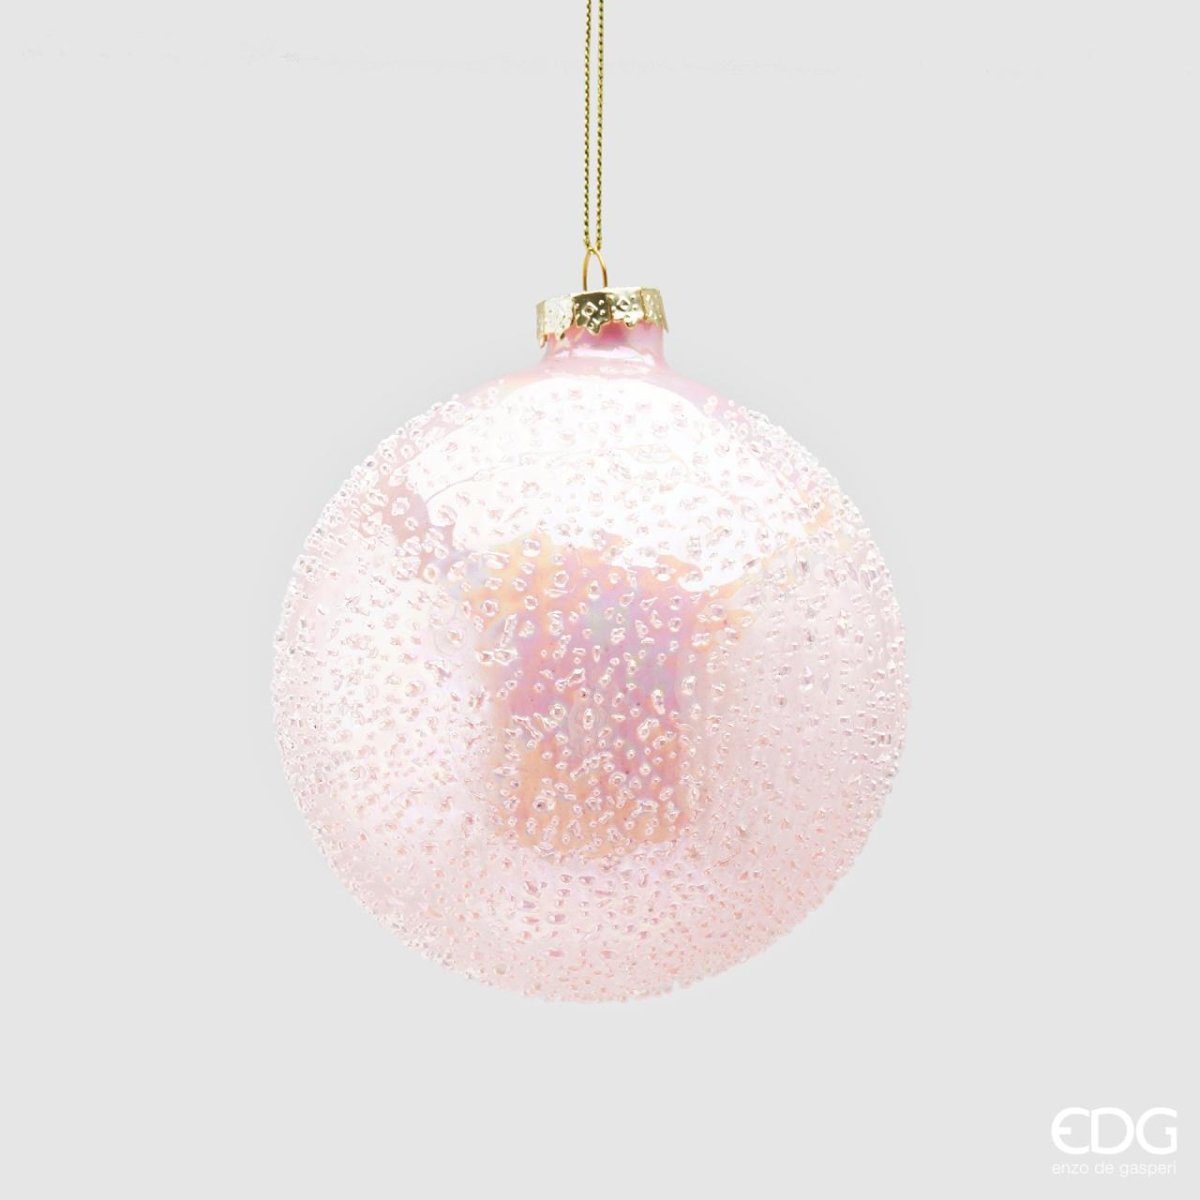 Edg - palla di natale in vetro microbolle rosa | rohome - Rohome